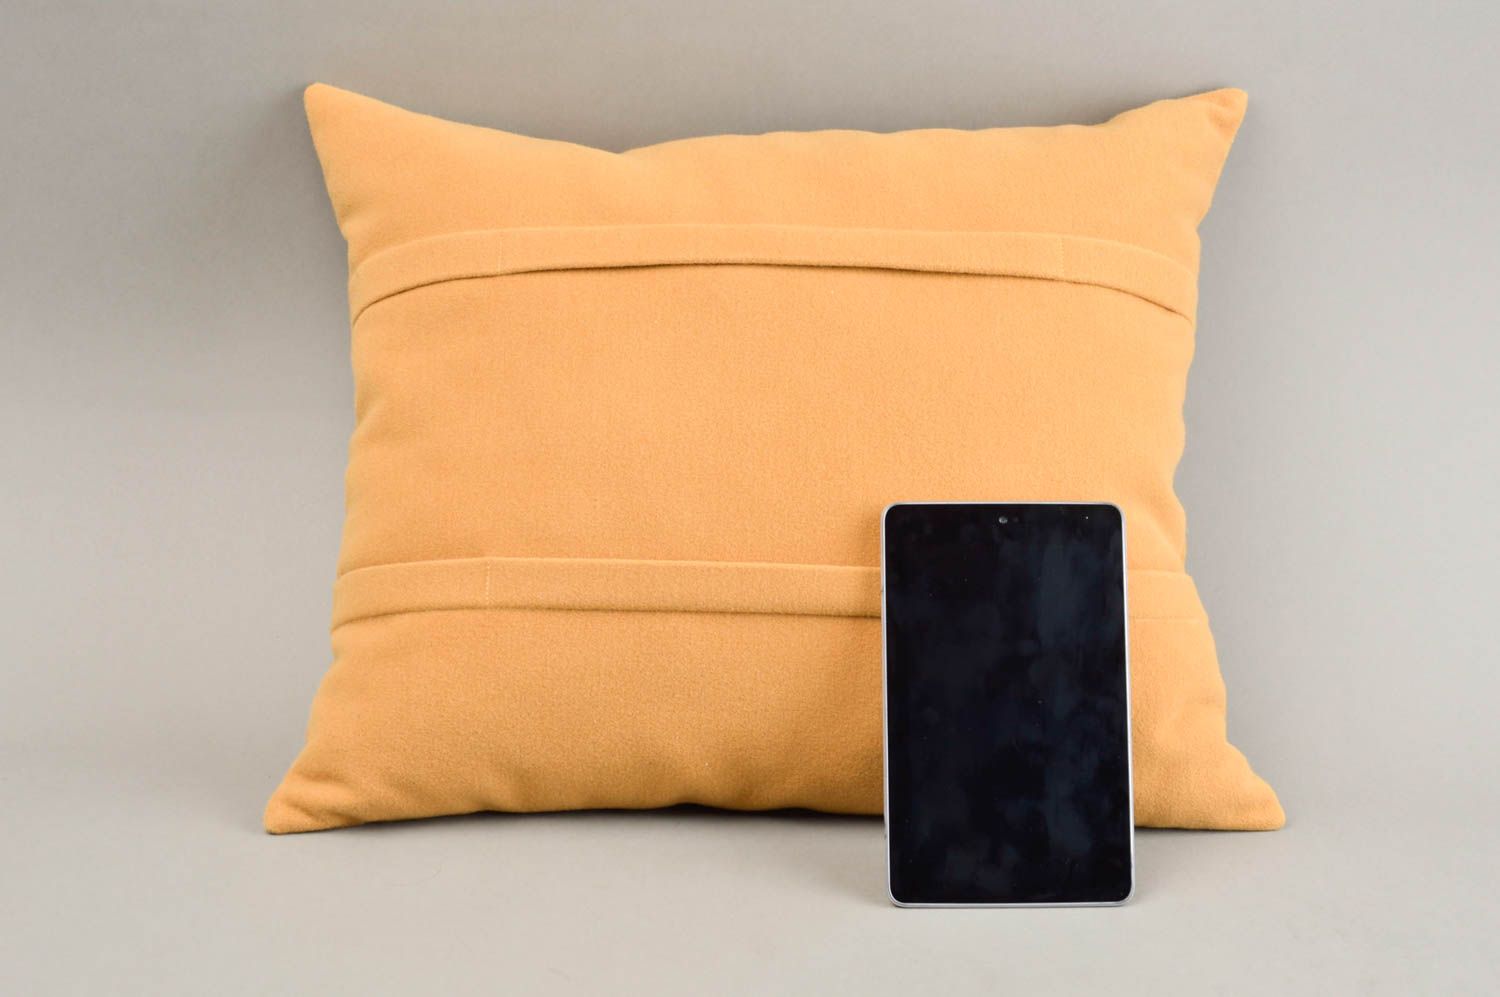 Подарок ручной работы подставка для планшета оранжевая оригинальная подушка фото 2